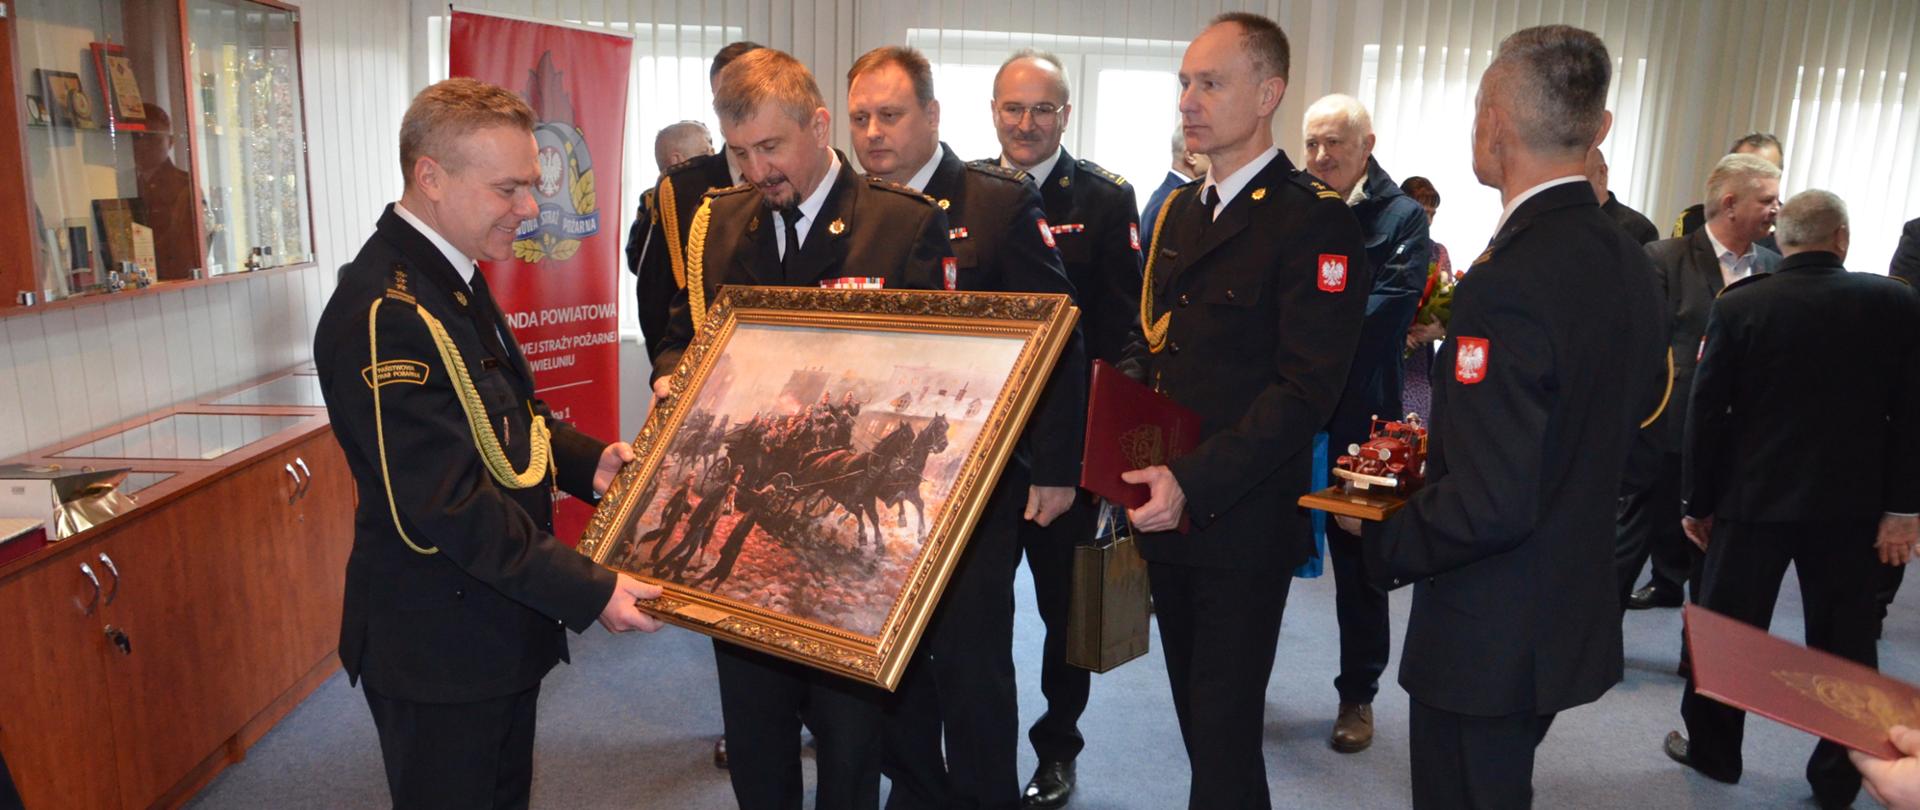 st. bryg. Piotr Cały otrzymuje od st. bryg. Pawła Malinowskiego obraz przedstawiający wyjeżdzających do akcji strażaków w wozie konnym